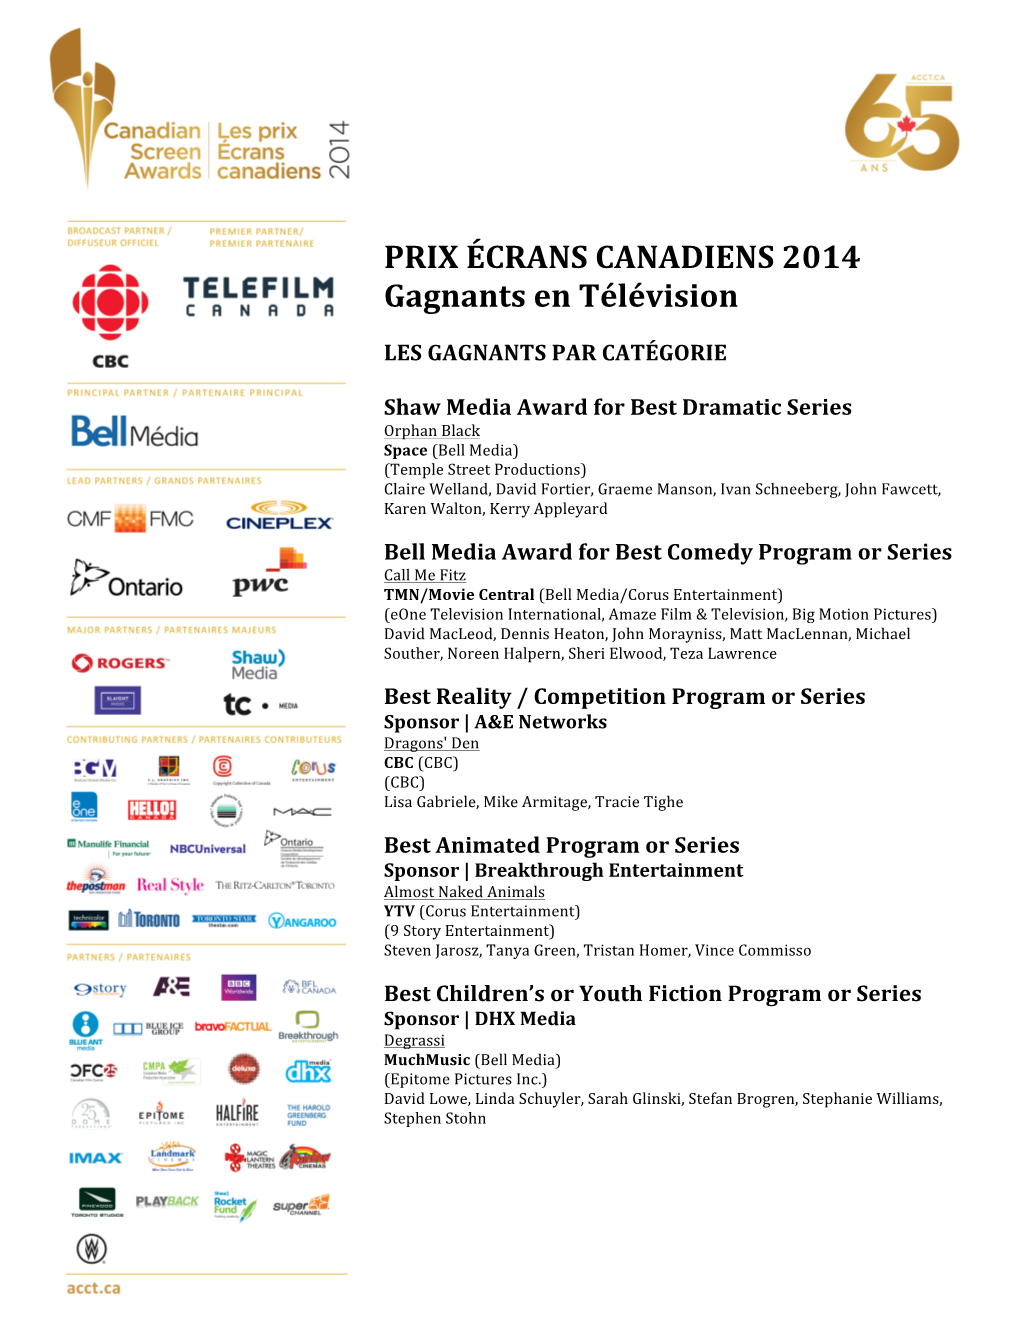 PRIX ÉCRANS CANADIENS 2014 Gagnants En Télévision